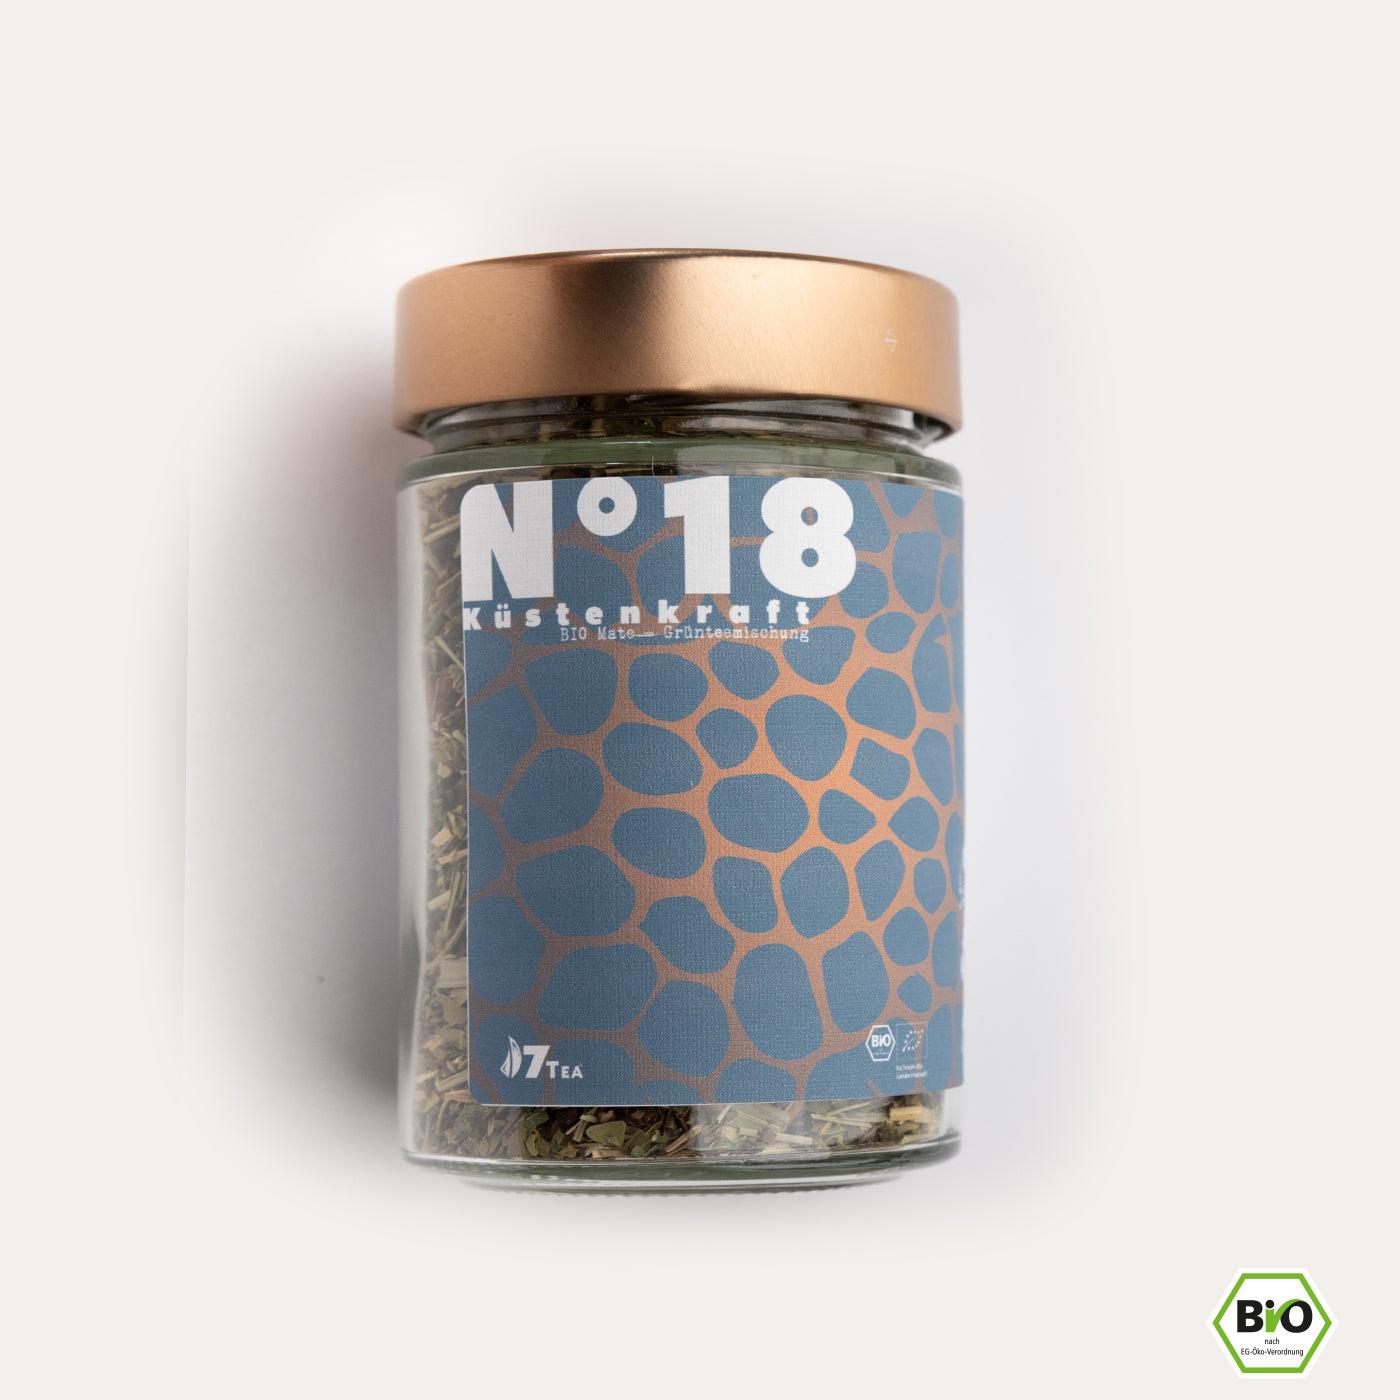 Nordische Kraft Bundle - 7Tea® Bio-Tee Onlineshop